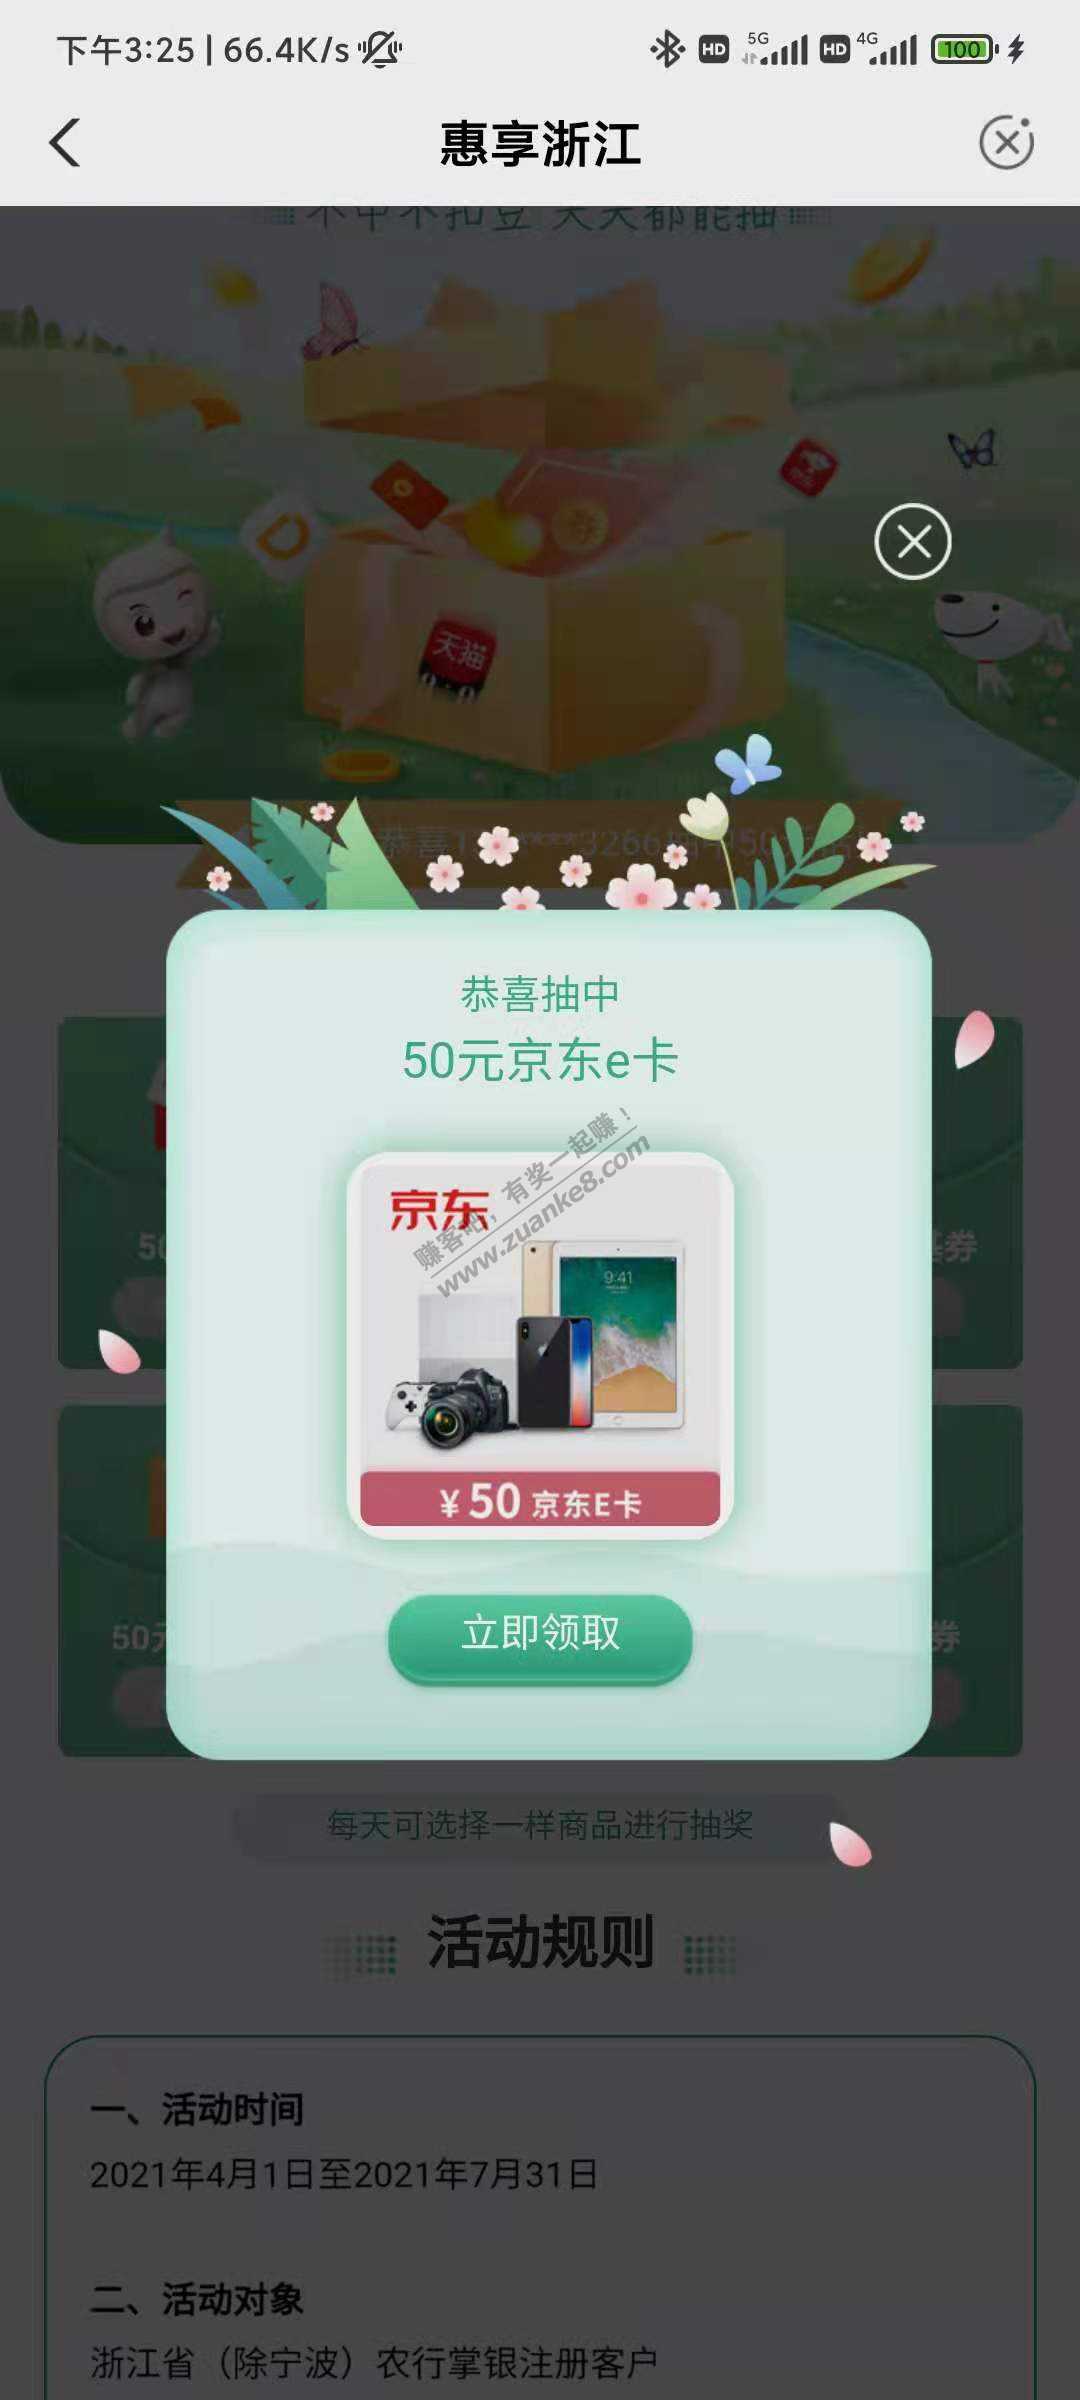 浙江农行 5000豆E卡有水-惠小助(52huixz.com)